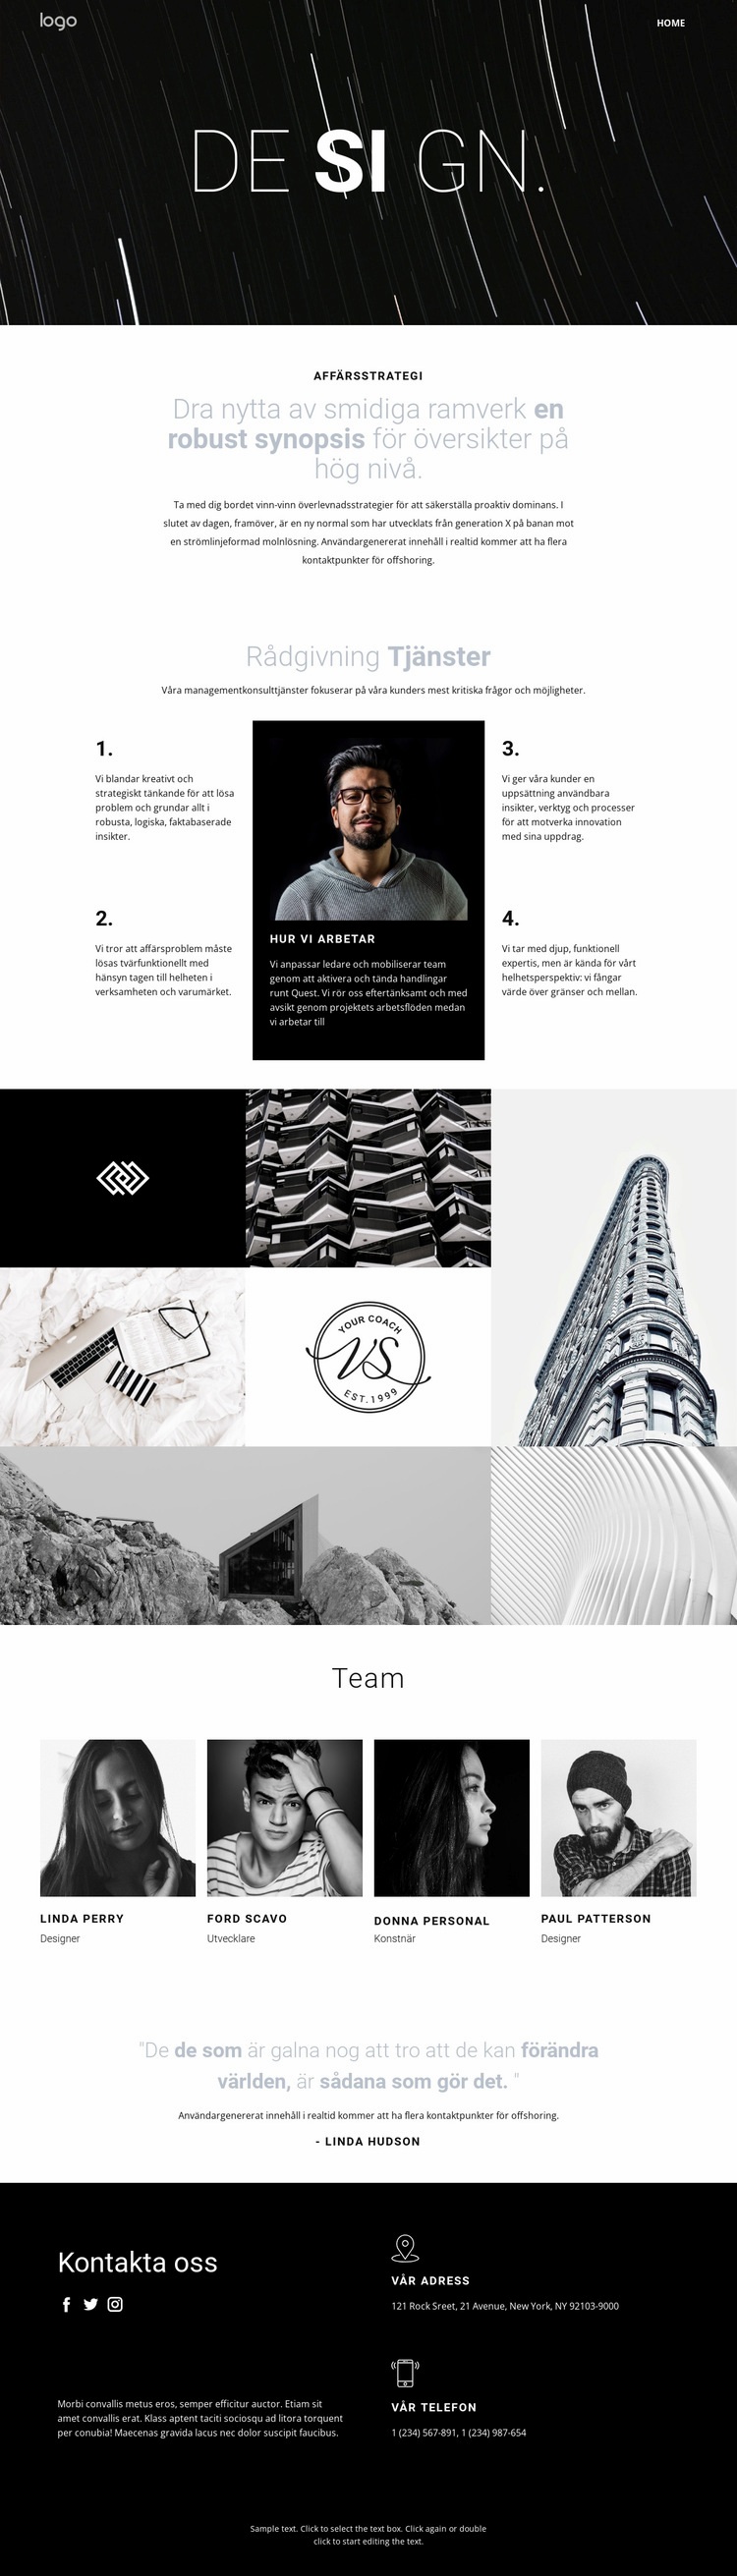 Design och kreativ konst Webbplats mall